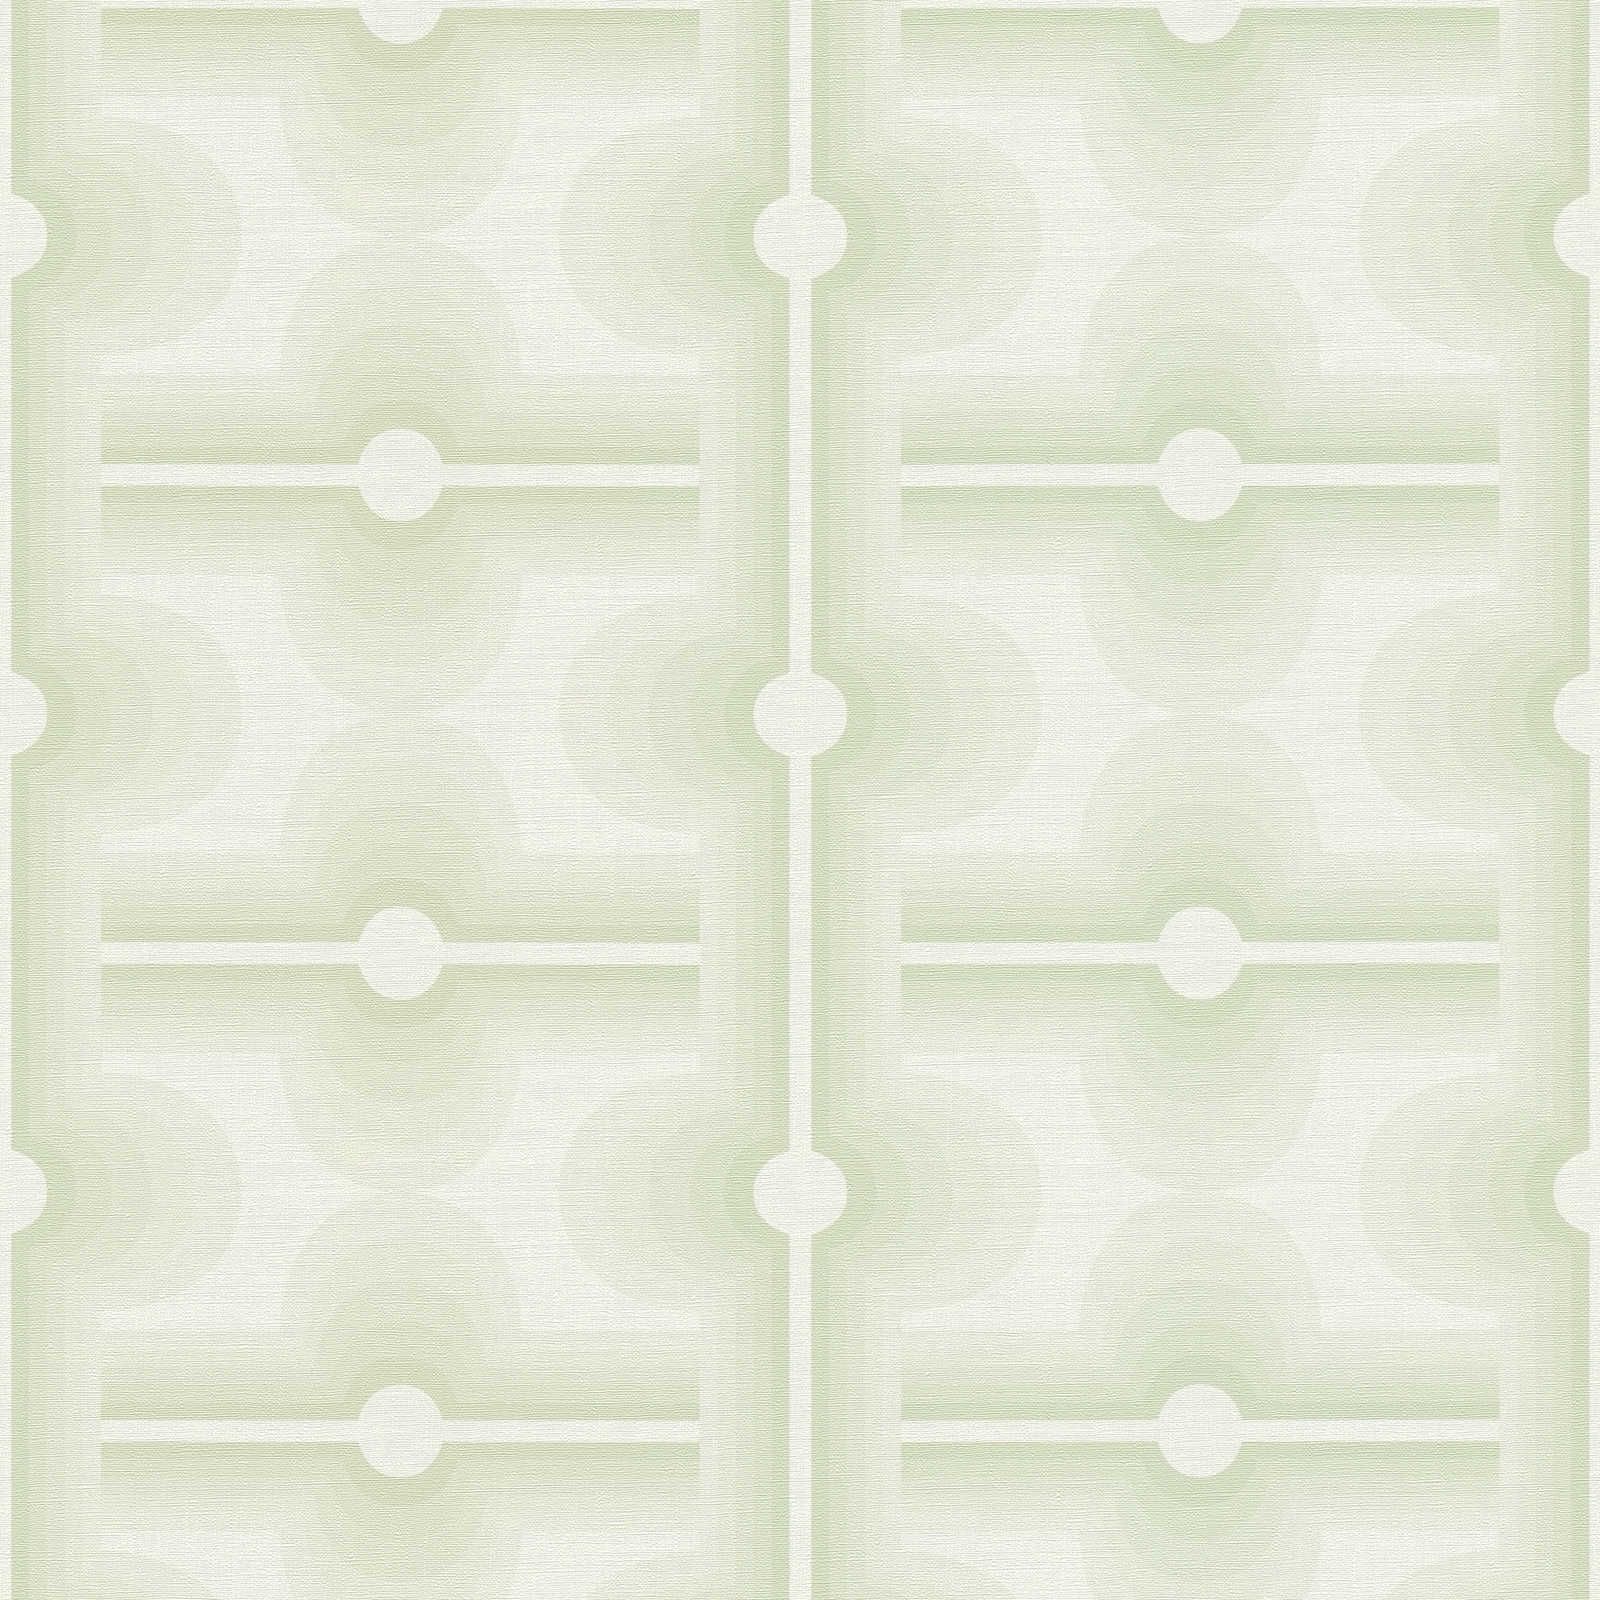         Retro Muster auf Vliestapete in einem blassen Grün – Grün, Creme
    